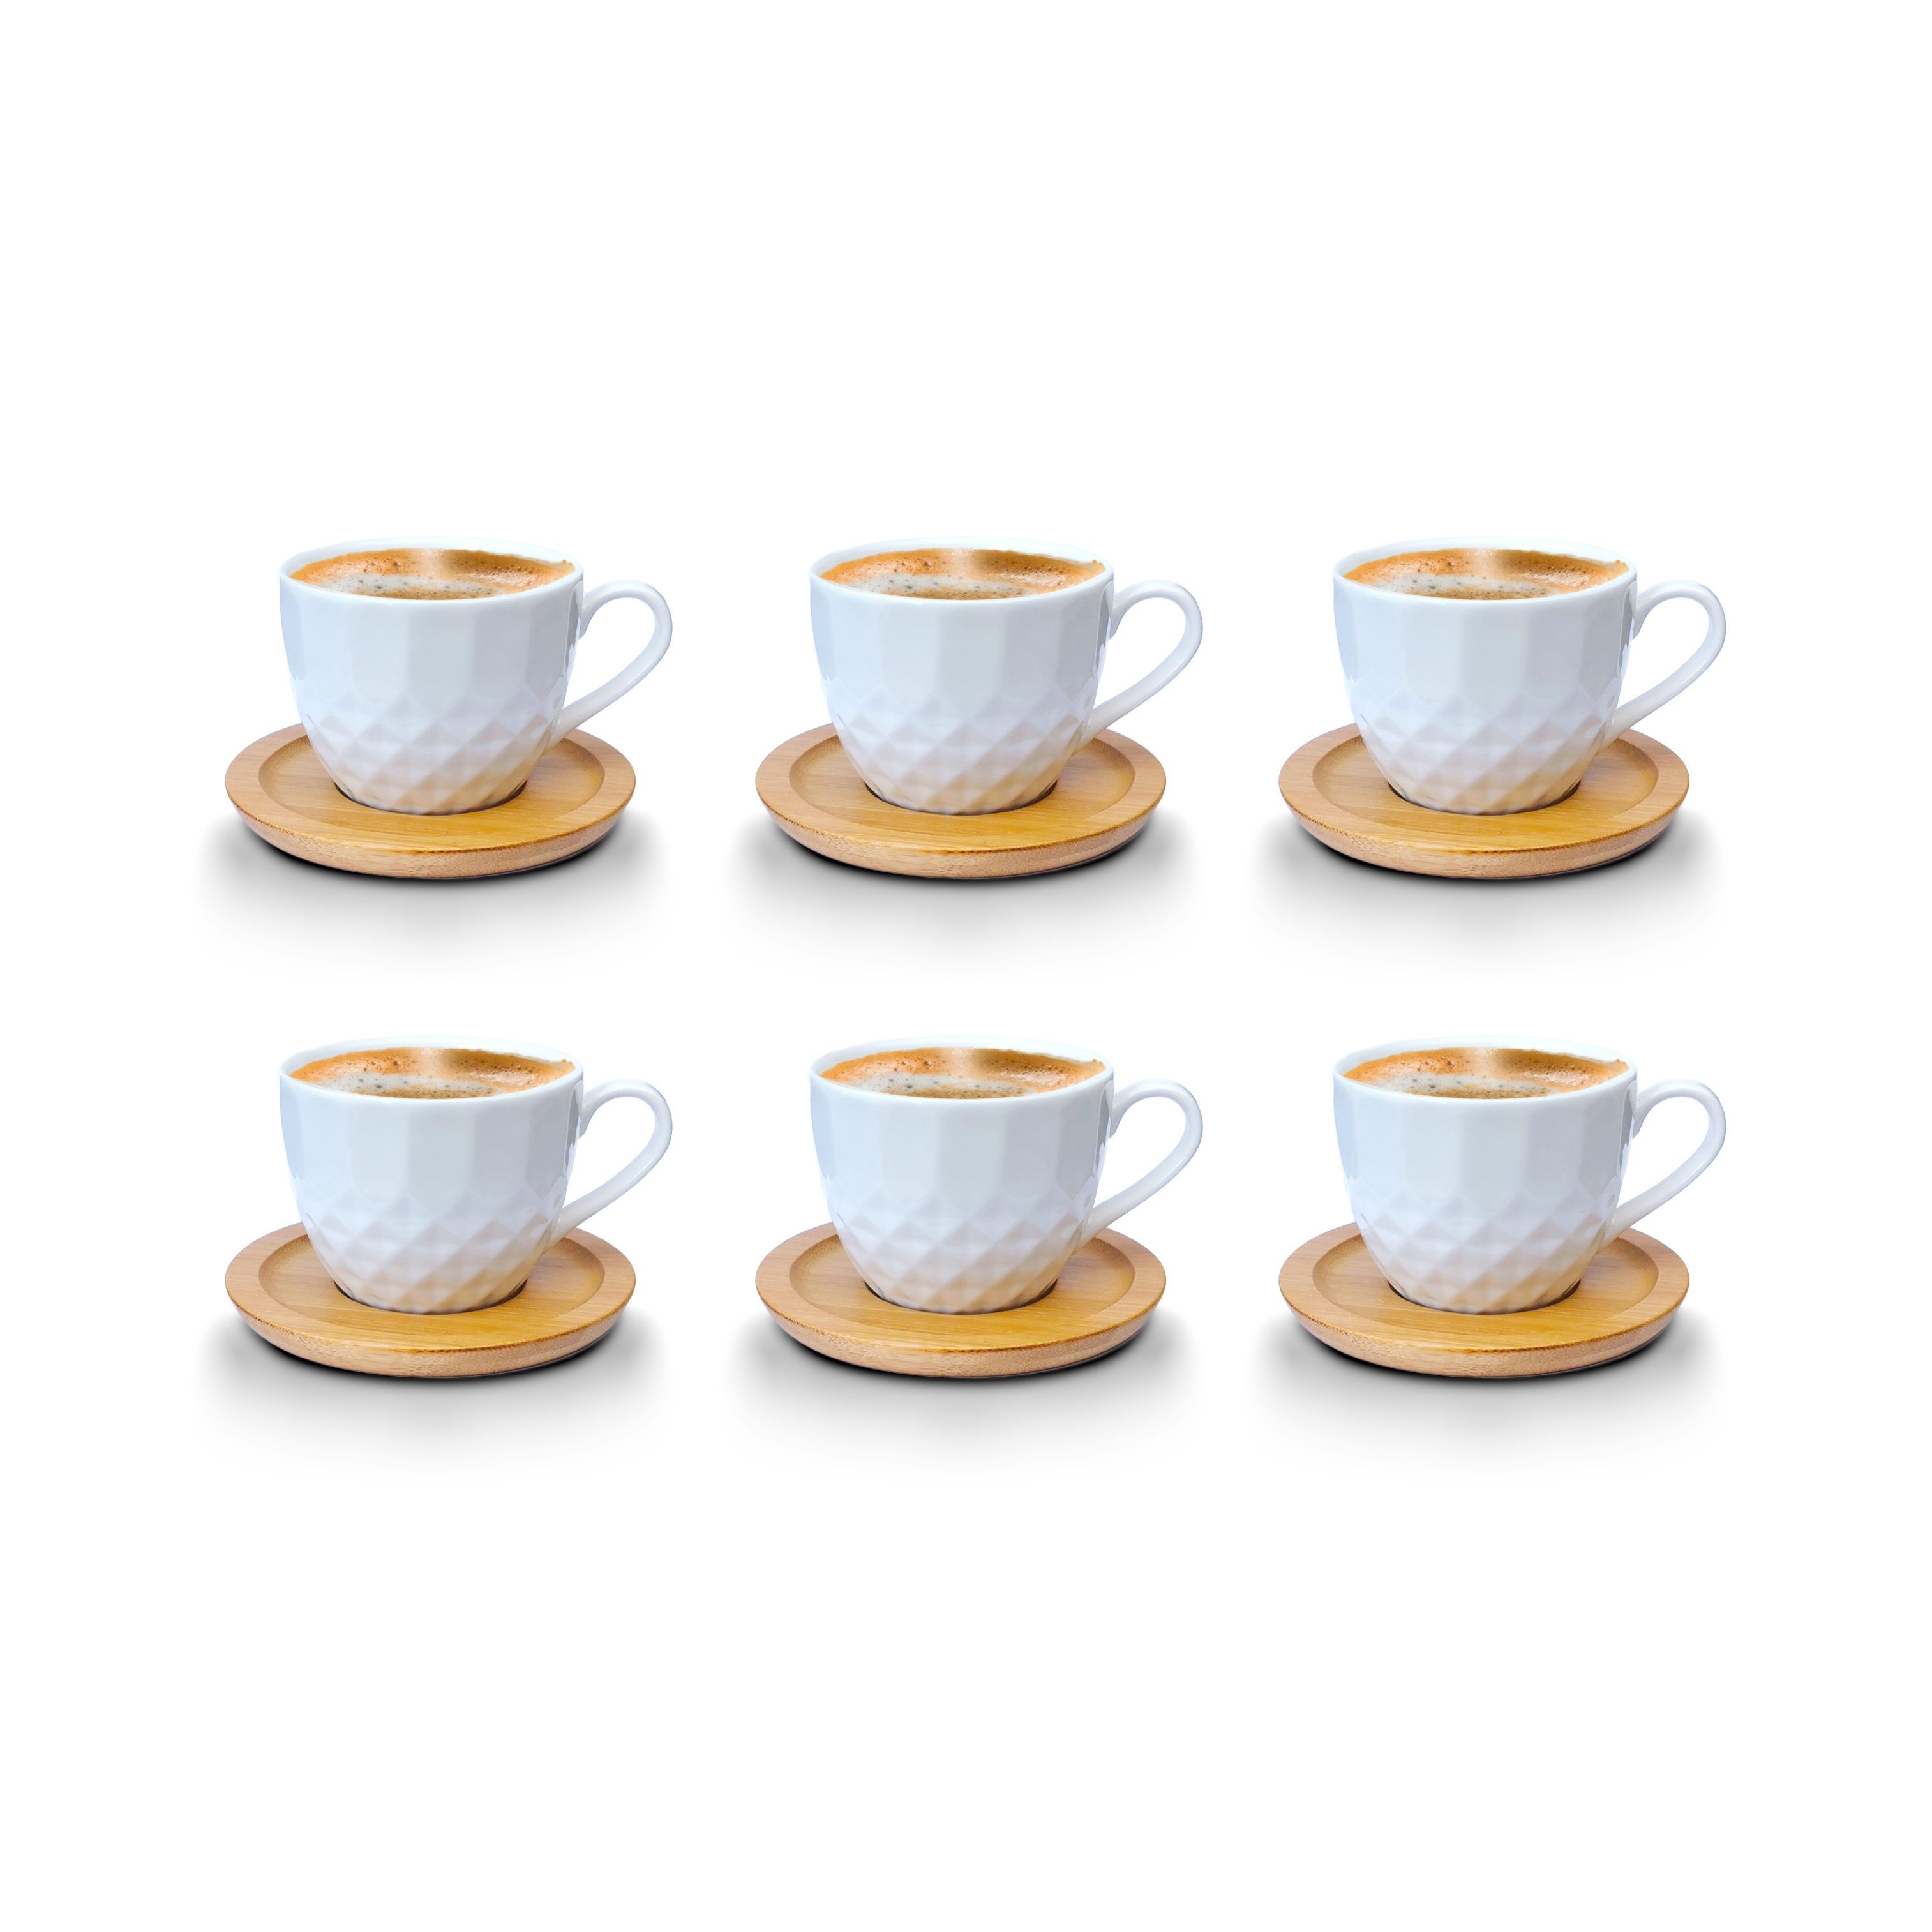 Melody Tasse Espressotassen, mit Kaffeeservice Untertassen Tassen Porzellan Mod3 6er-Set, 12-Teilig, Set mit Untertassen Porzellan, Teeservice